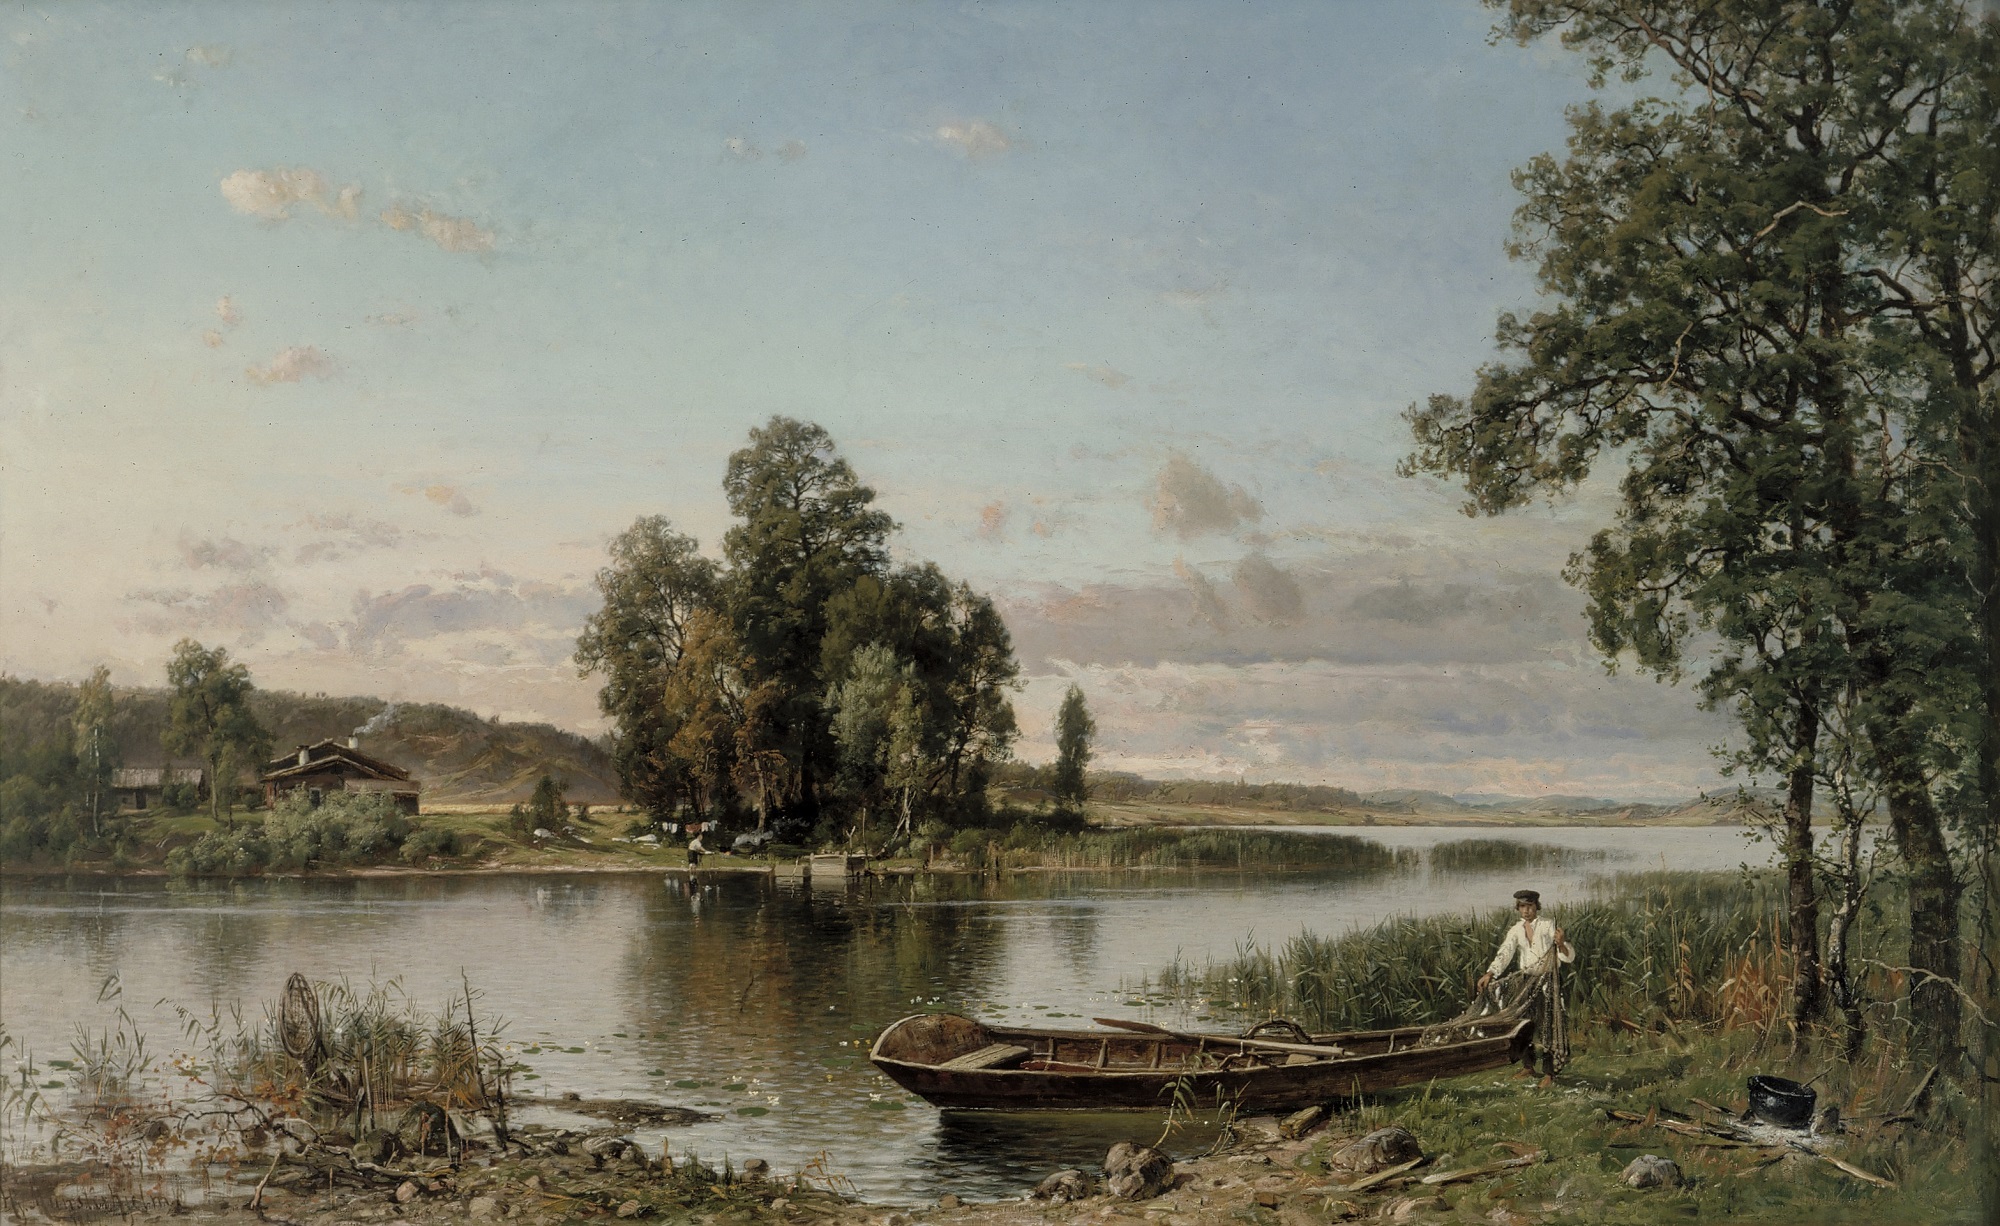 Hjalmar Munsterhjelmin kesäinen maalaus hämäläisestä järvimaisemasta, jossa veneen äärellä mies nostamassa kalastusverkkoja veneestään.